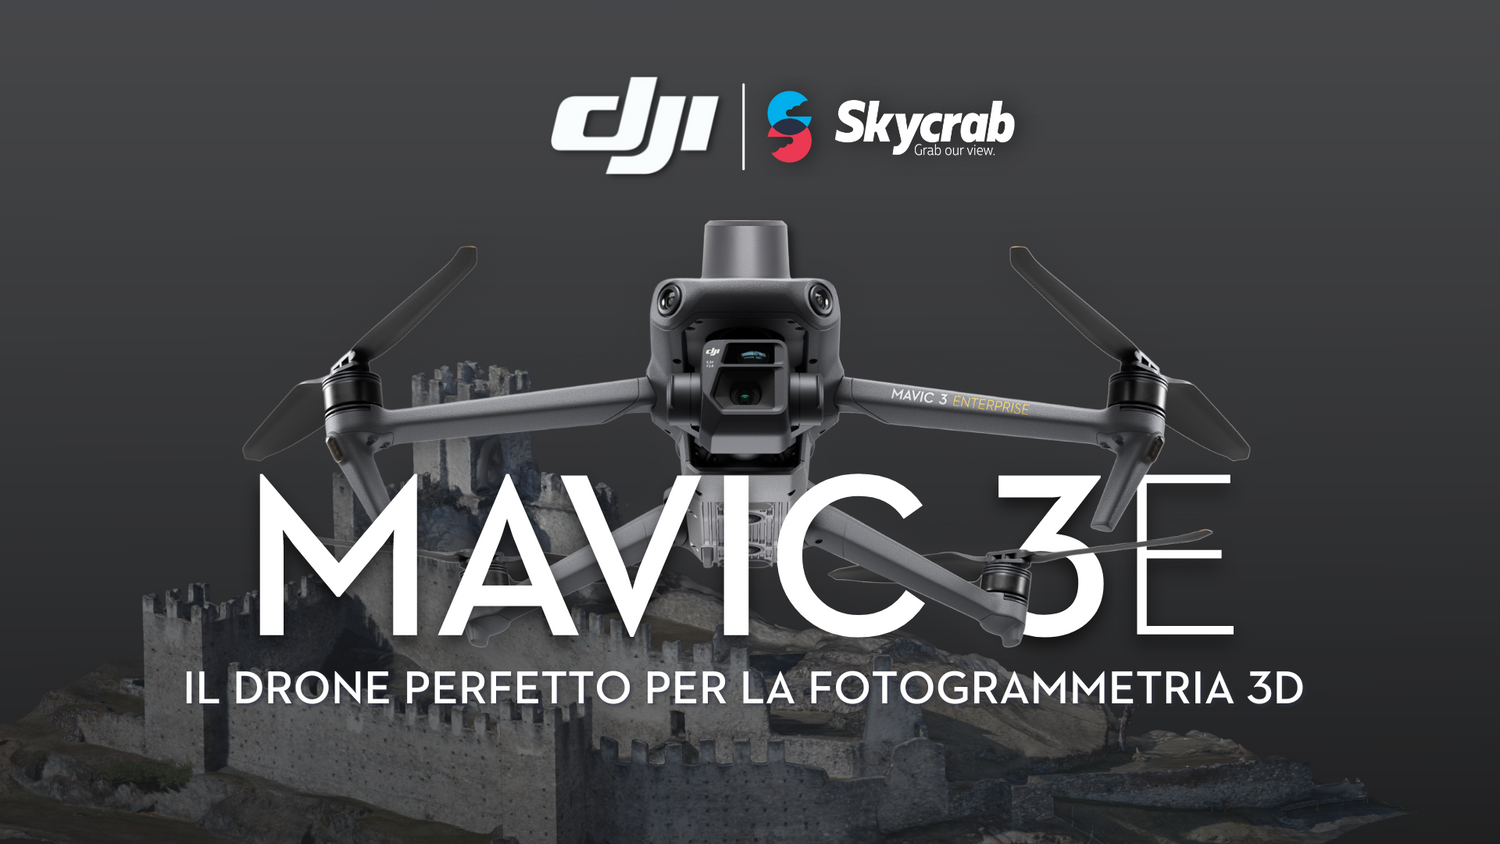 DJI Mavic 3 Enterprise - Il Drone perfetto per la Fotogrammetria 3D